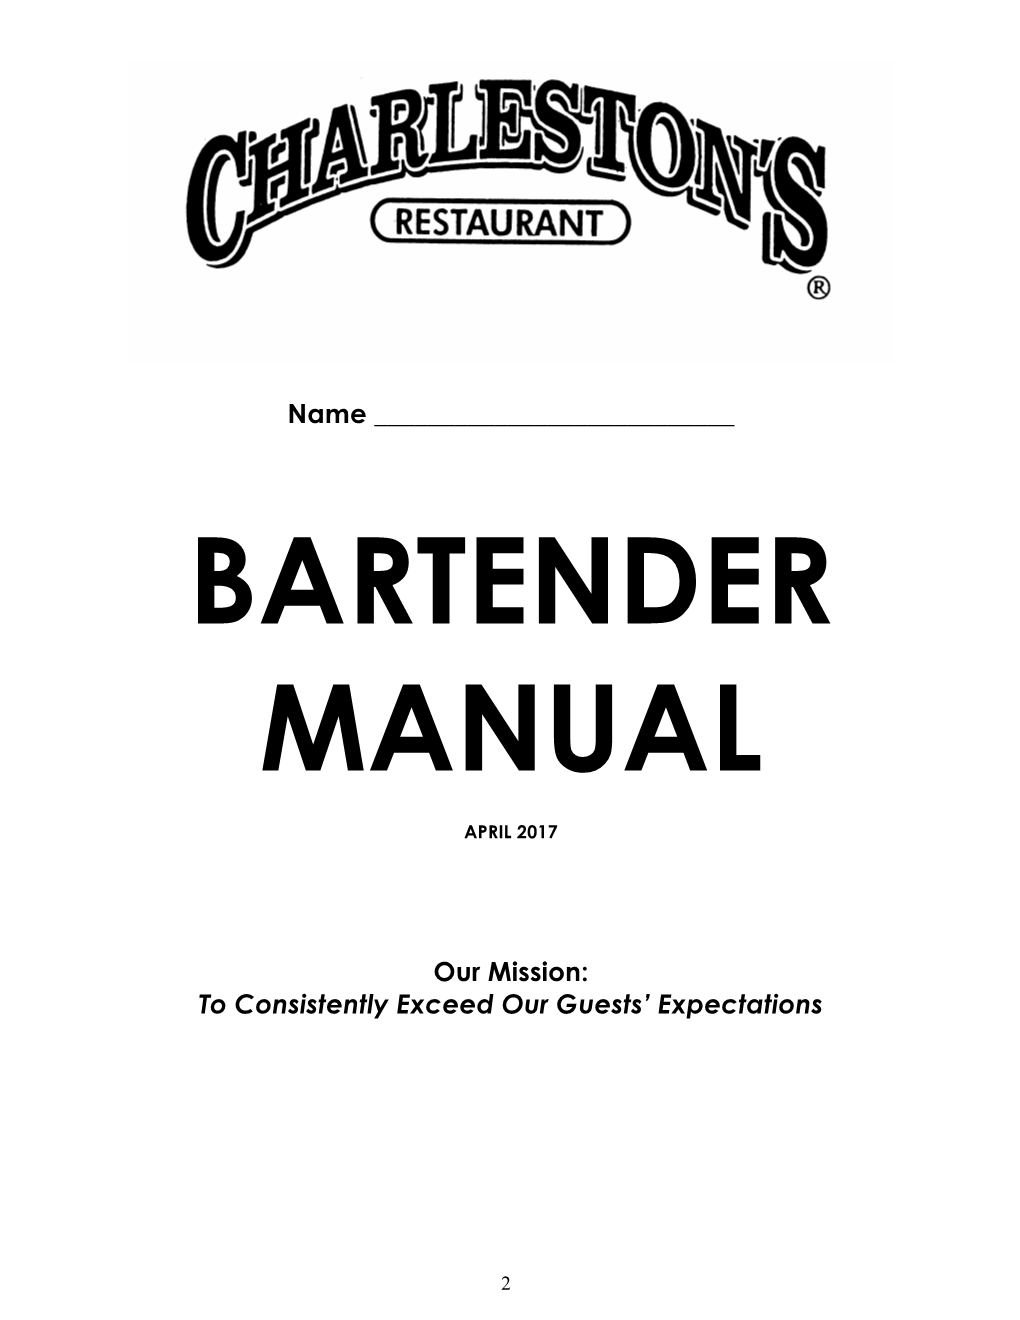 Charleston's Bar Manual 4.17-1.Pdf